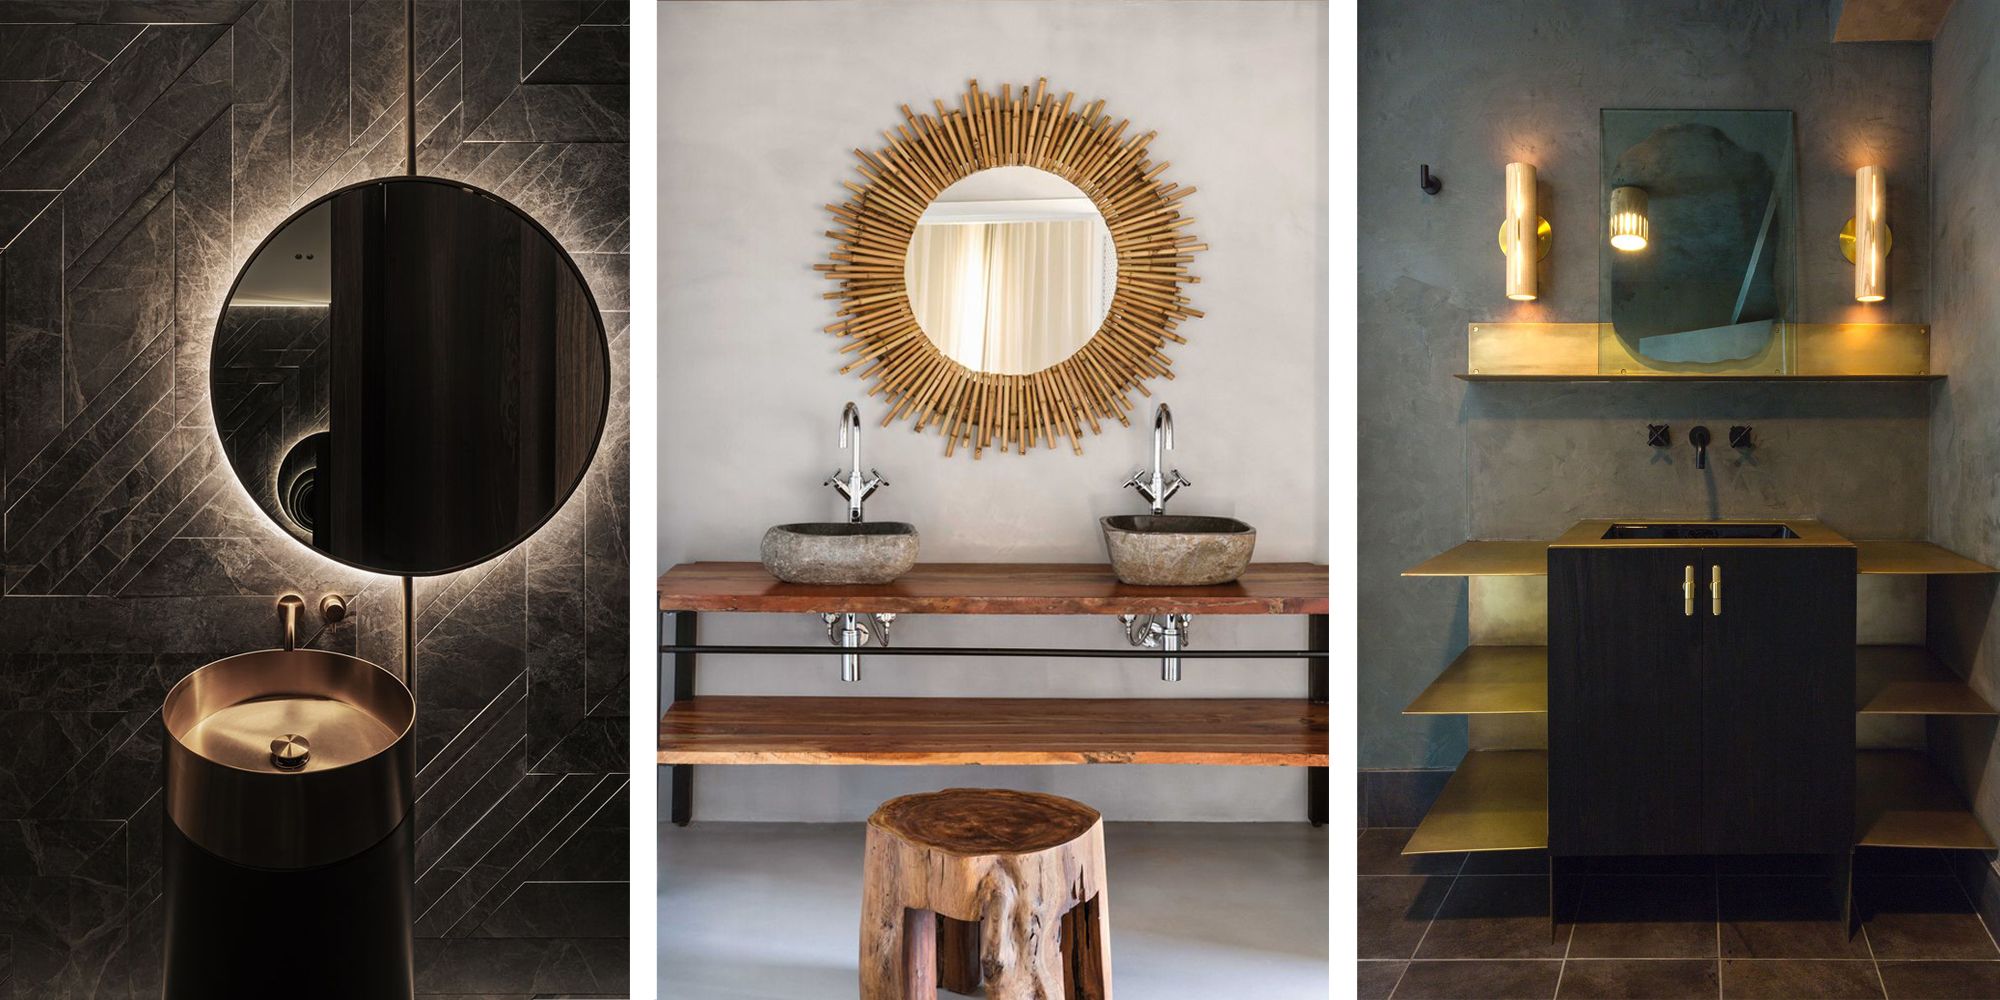 Lubricar Pavimentación inquilino Ideas de decoración: Los espejos más modernos para el baño